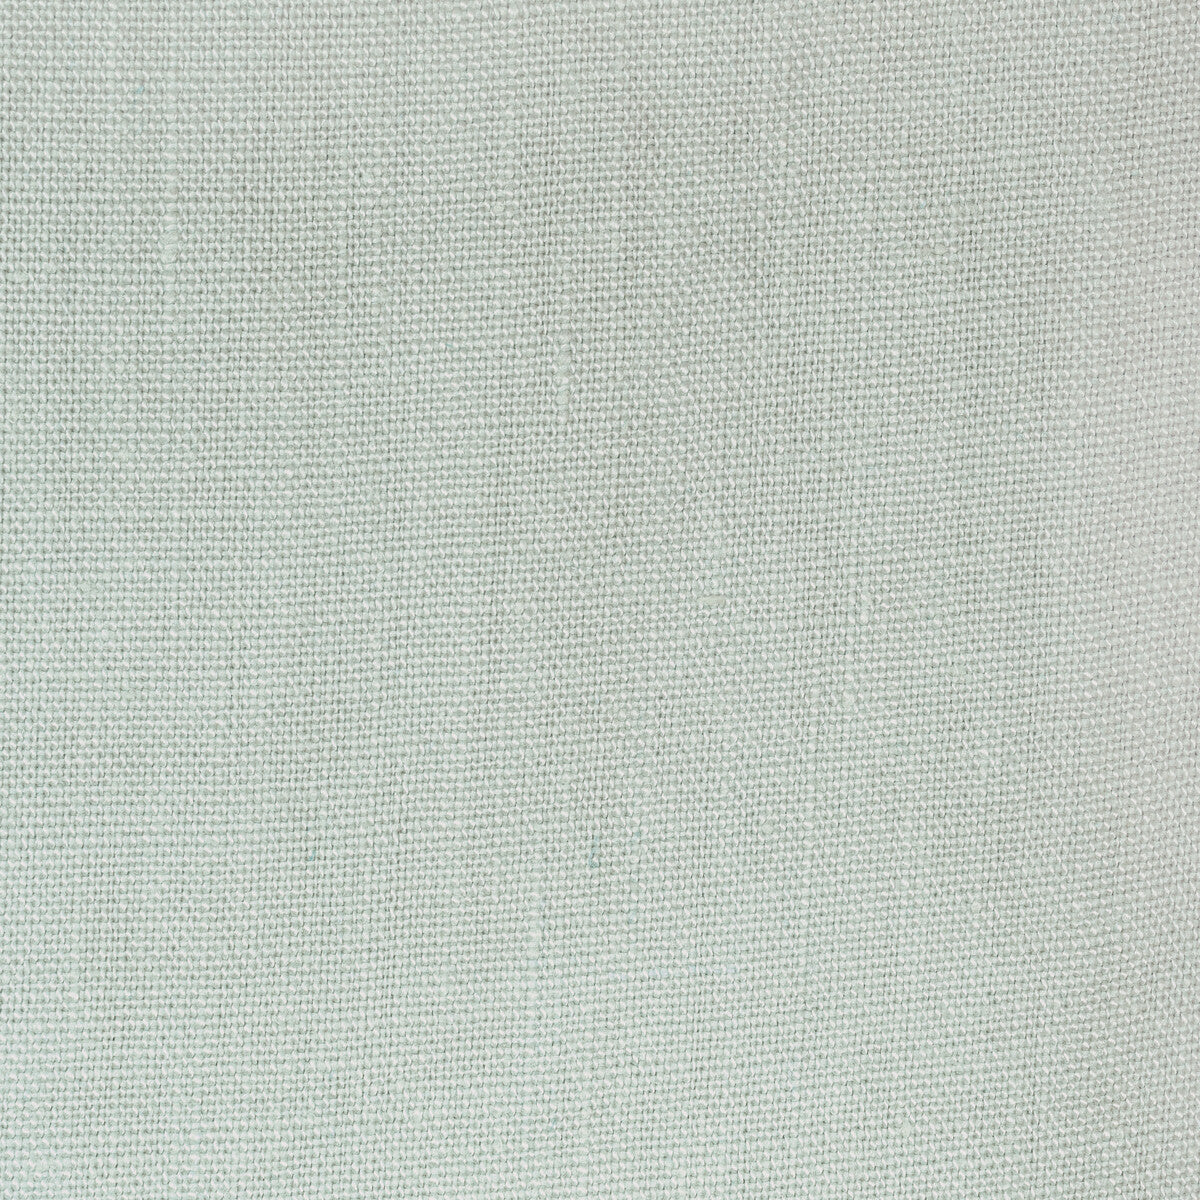 Kravet Basics fabric in 36332-1123 color - pattern 36332.1123.0 - by Kravet Basics